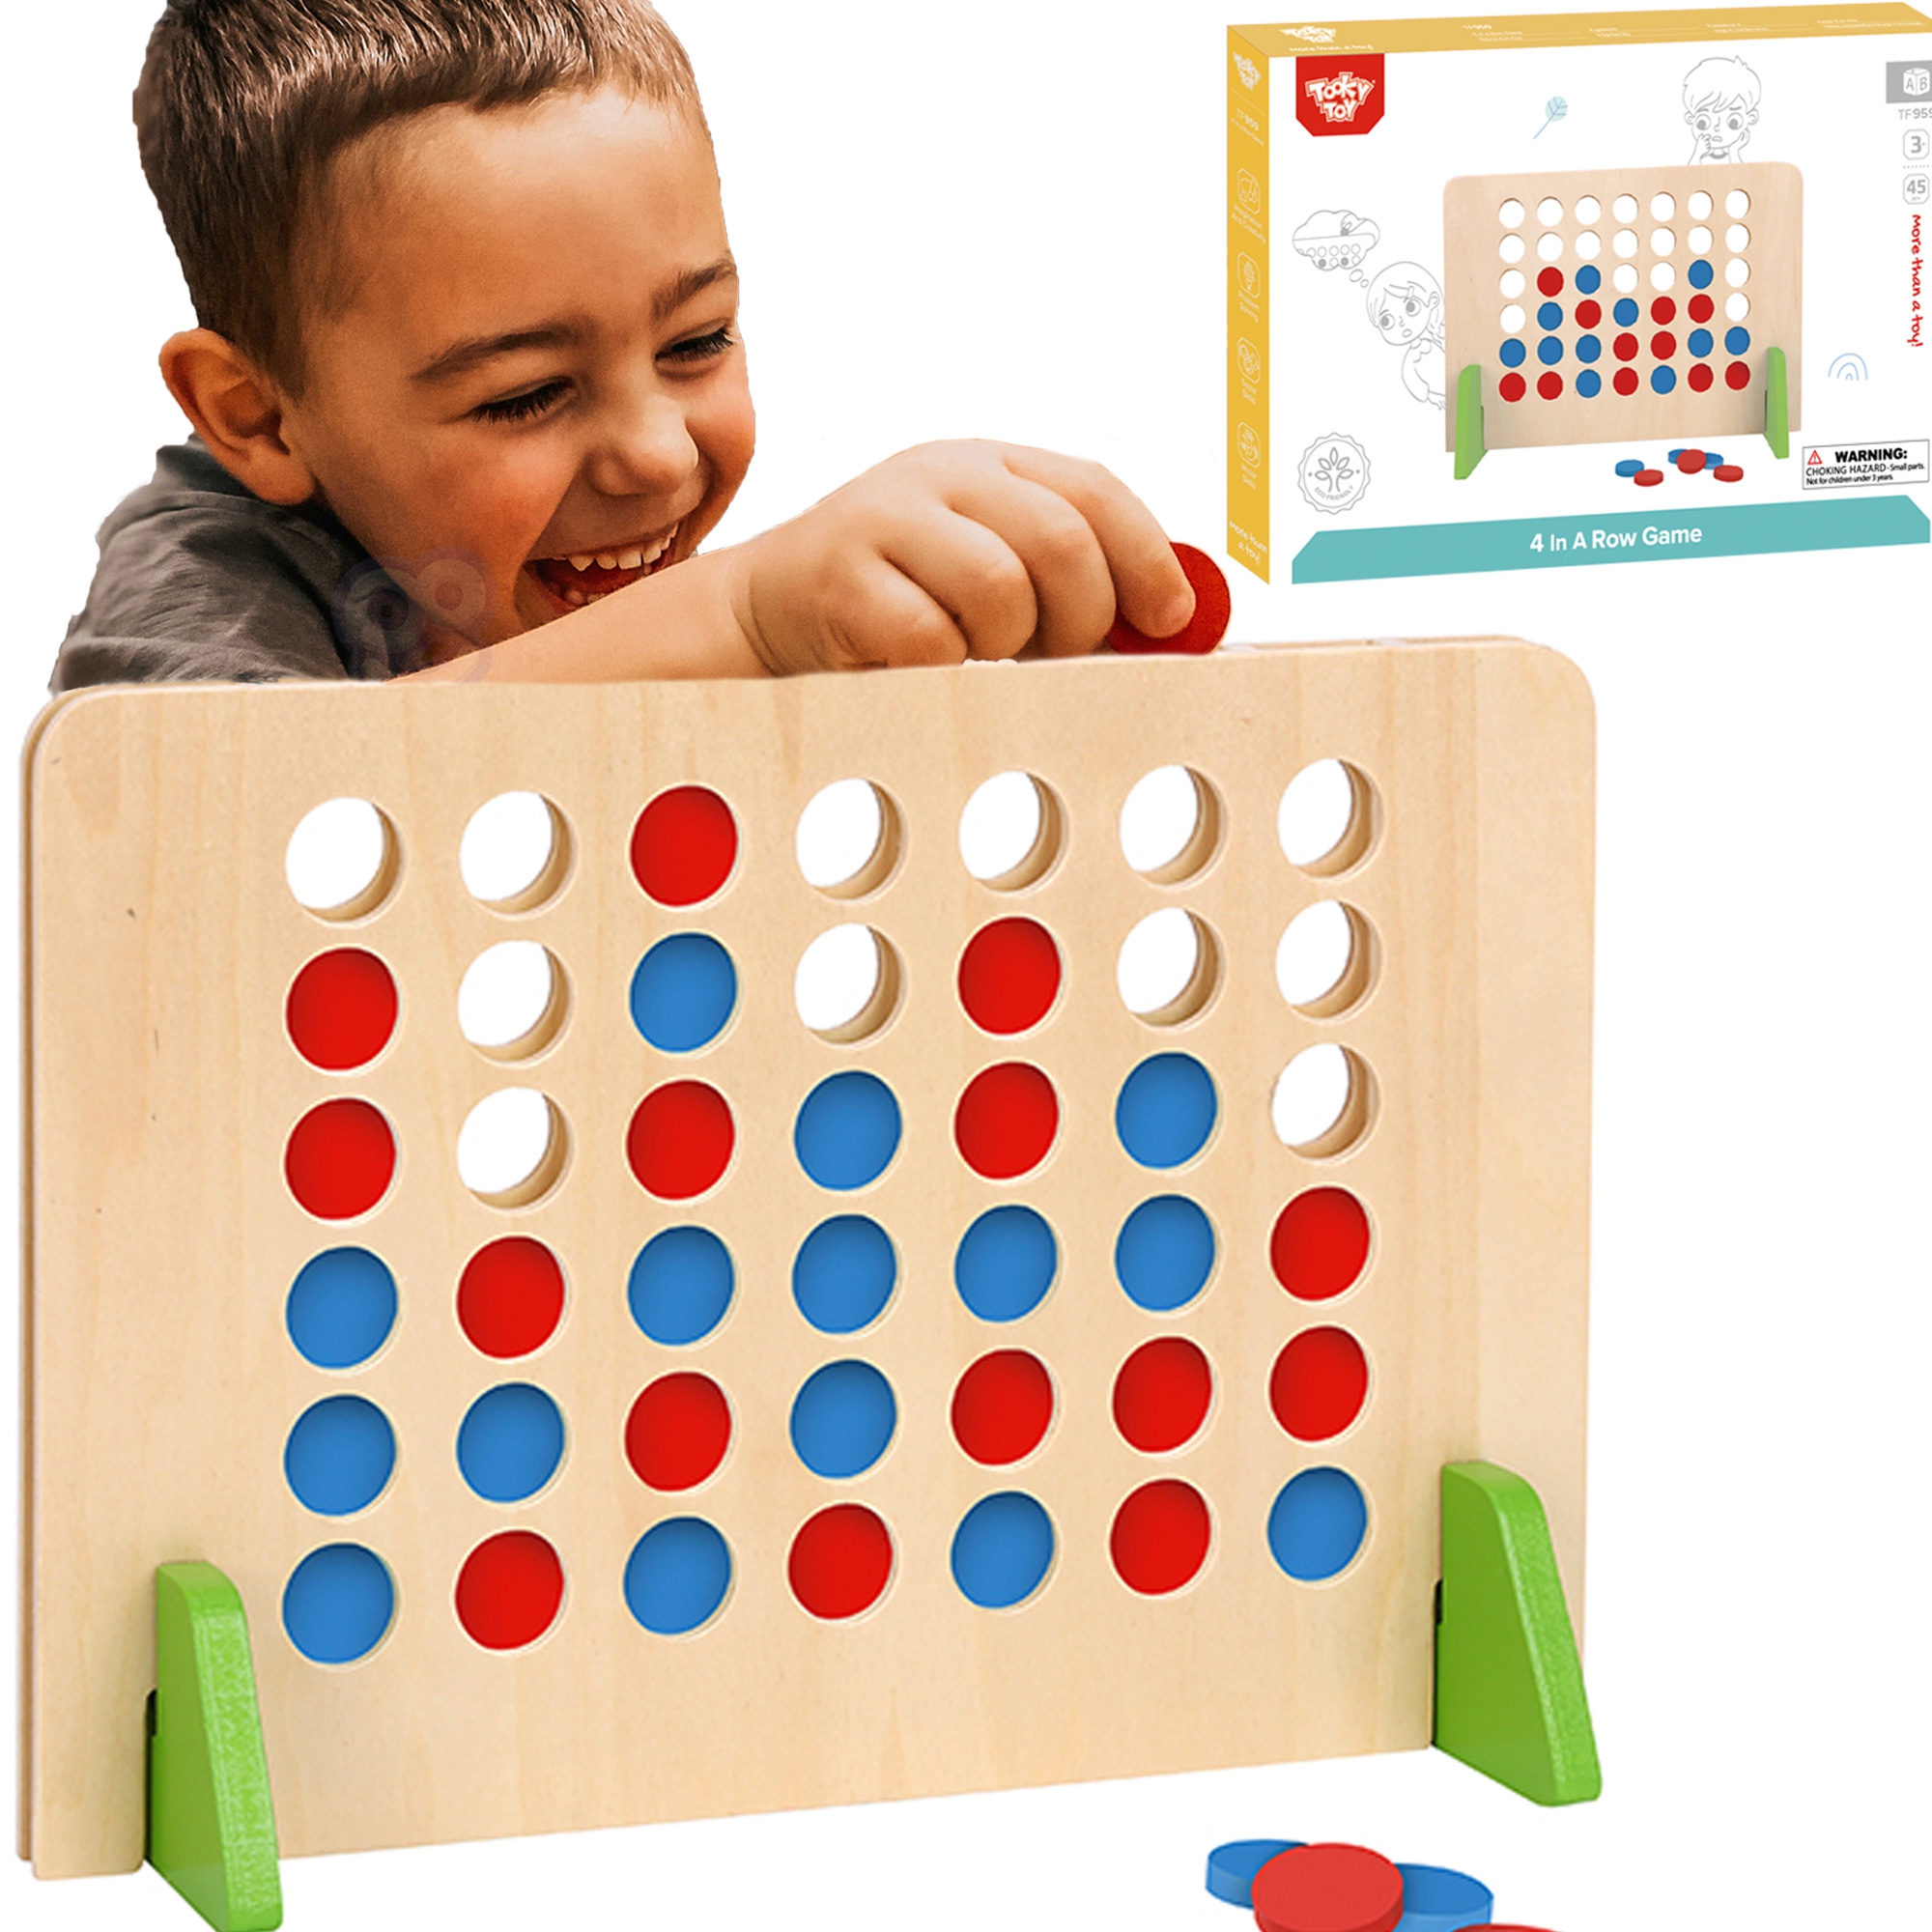 Drewniana gra logiczna 4 w linii 45 el., zabawka dla dzieci, Tooky Toy